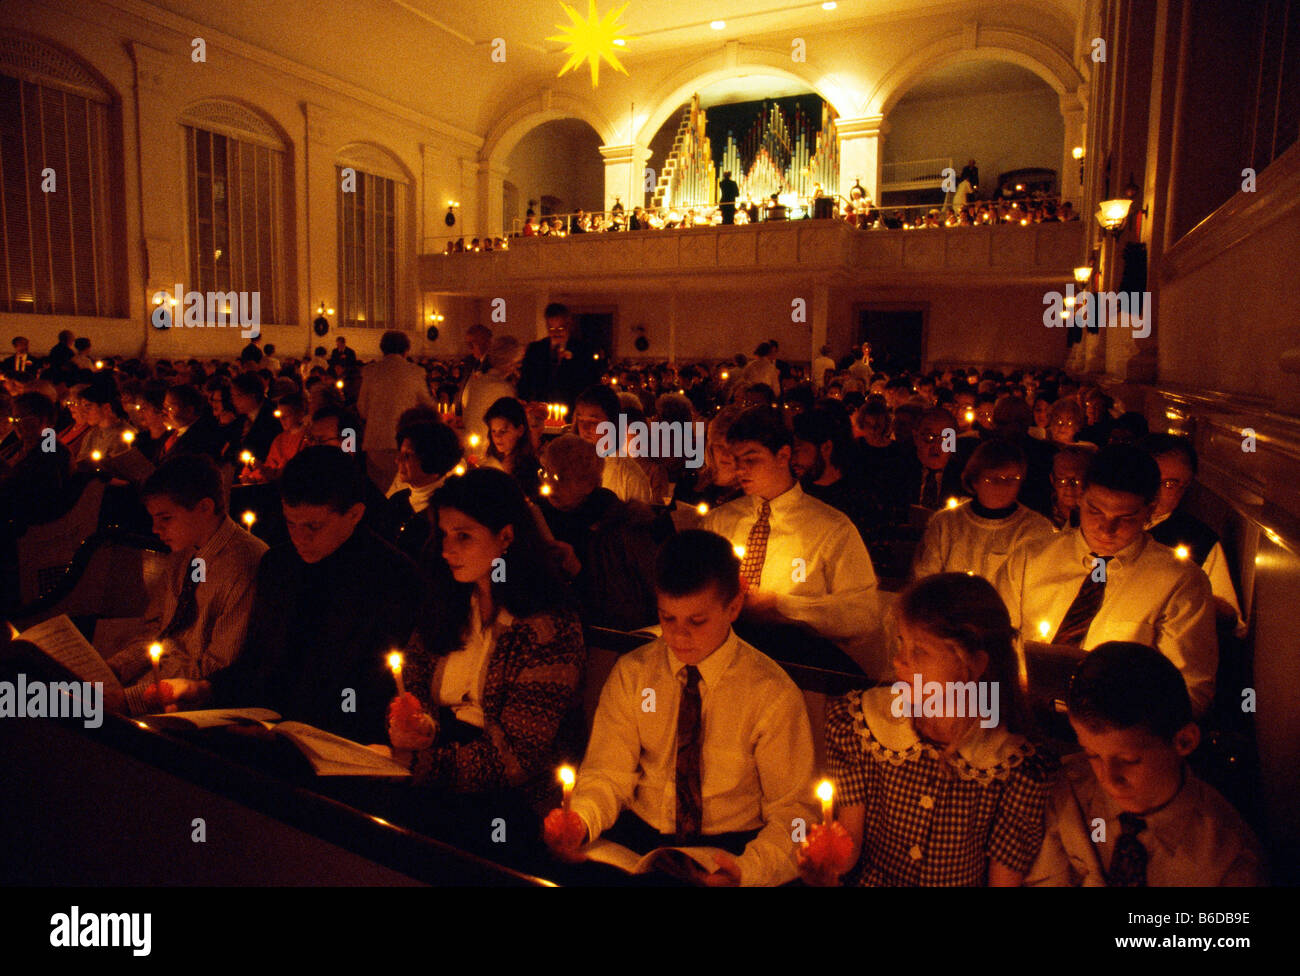 Weihnachten in Bethlehem, Pennsylvania, Heiligabend Mahnwachen, zentrale mährische Kirche. Stockfoto